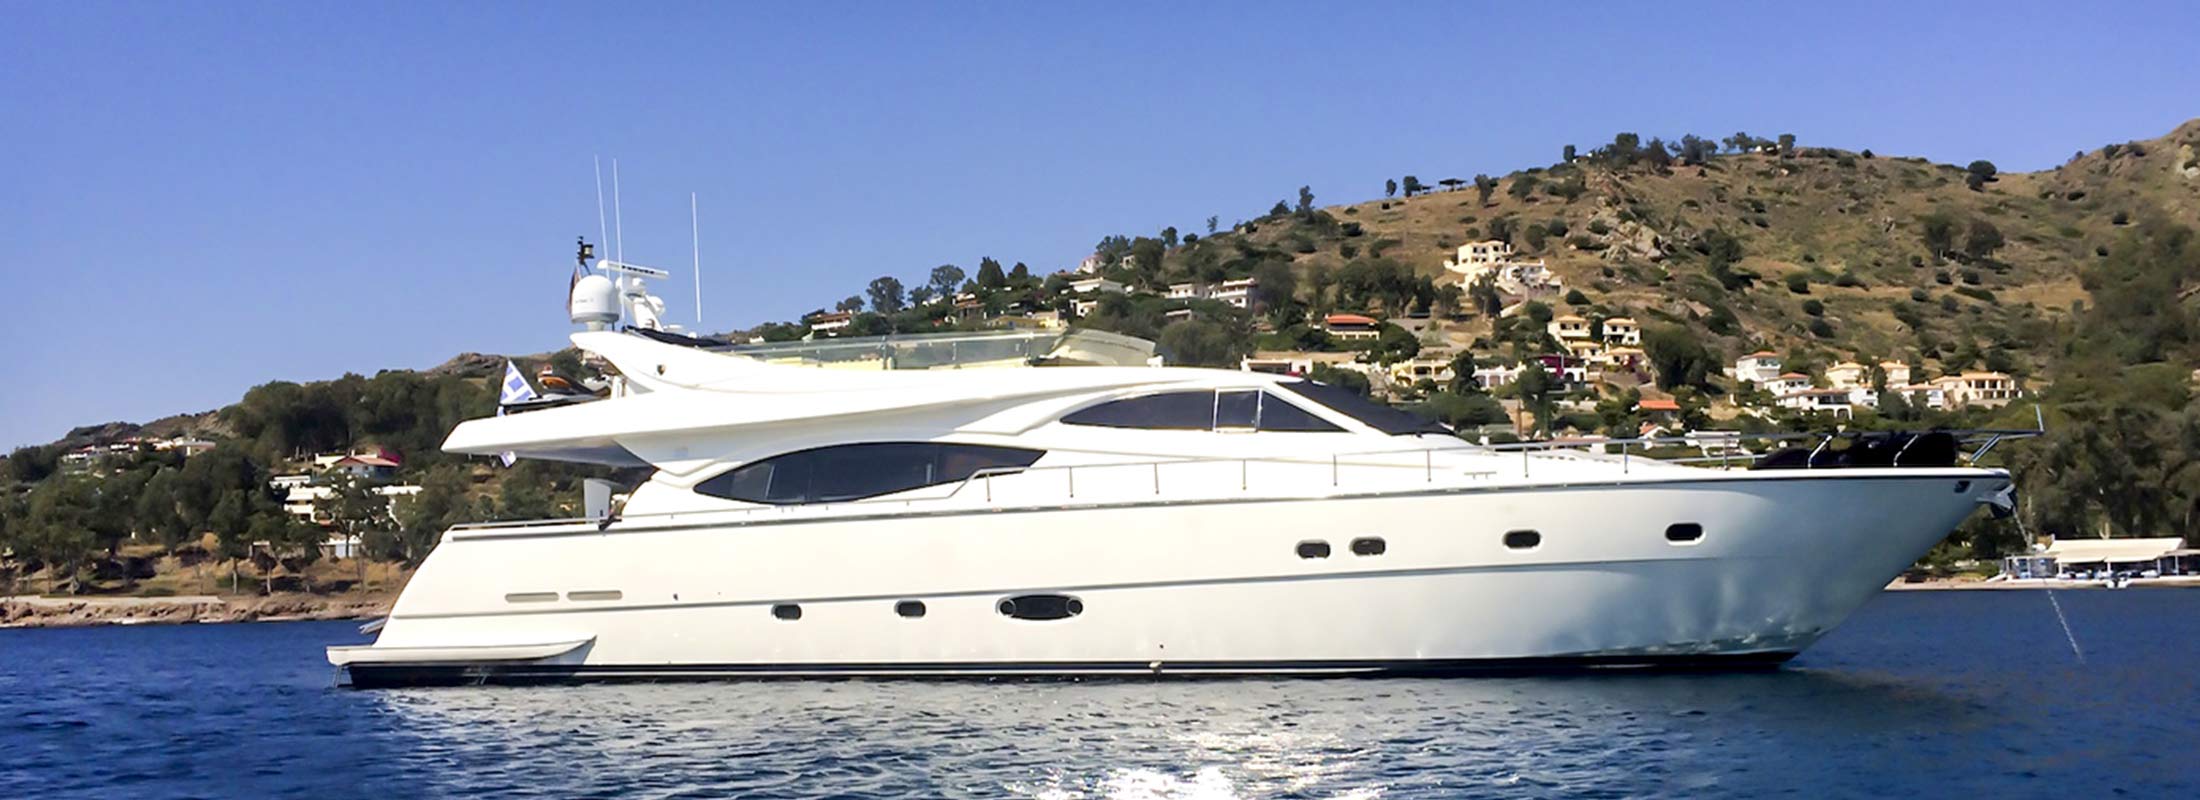 Amor Motor Yacht for Charter Mediterranean slider 1